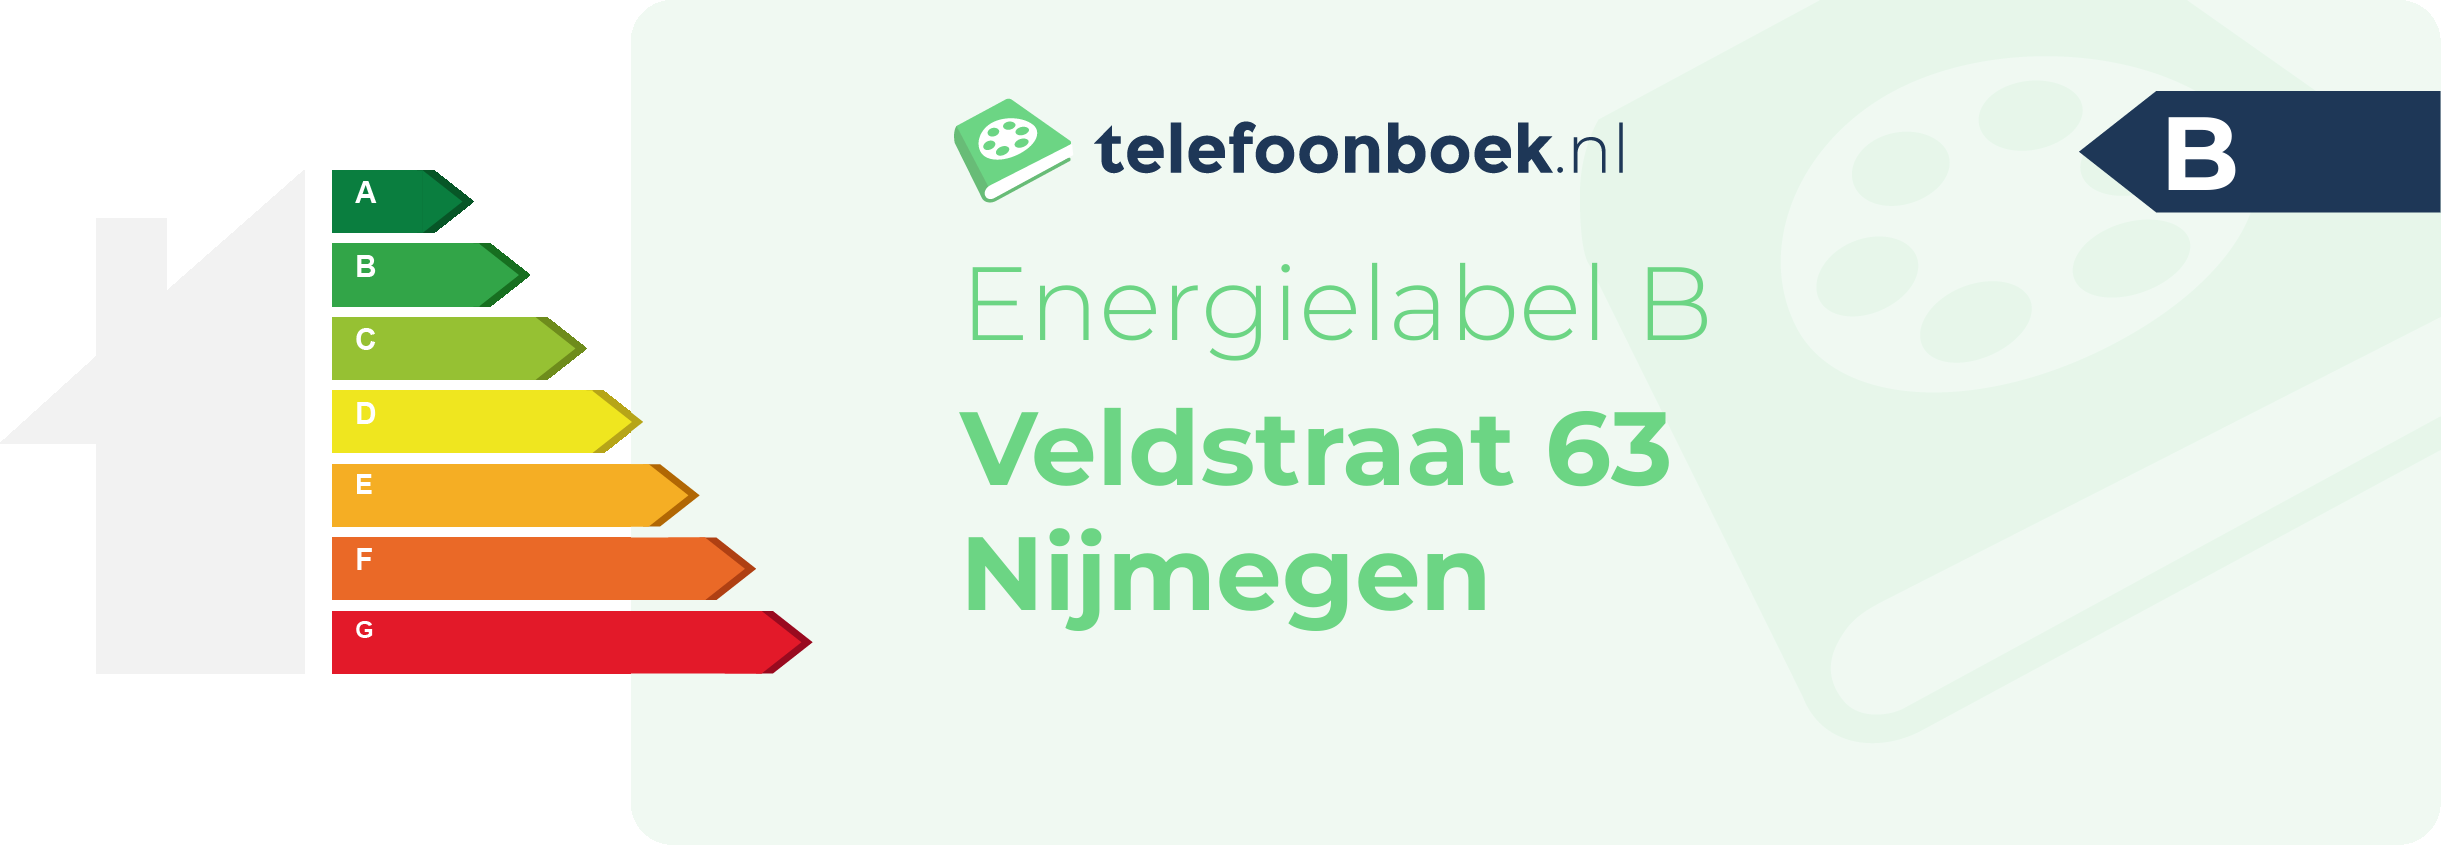 Energielabel Veldstraat 63 Nijmegen